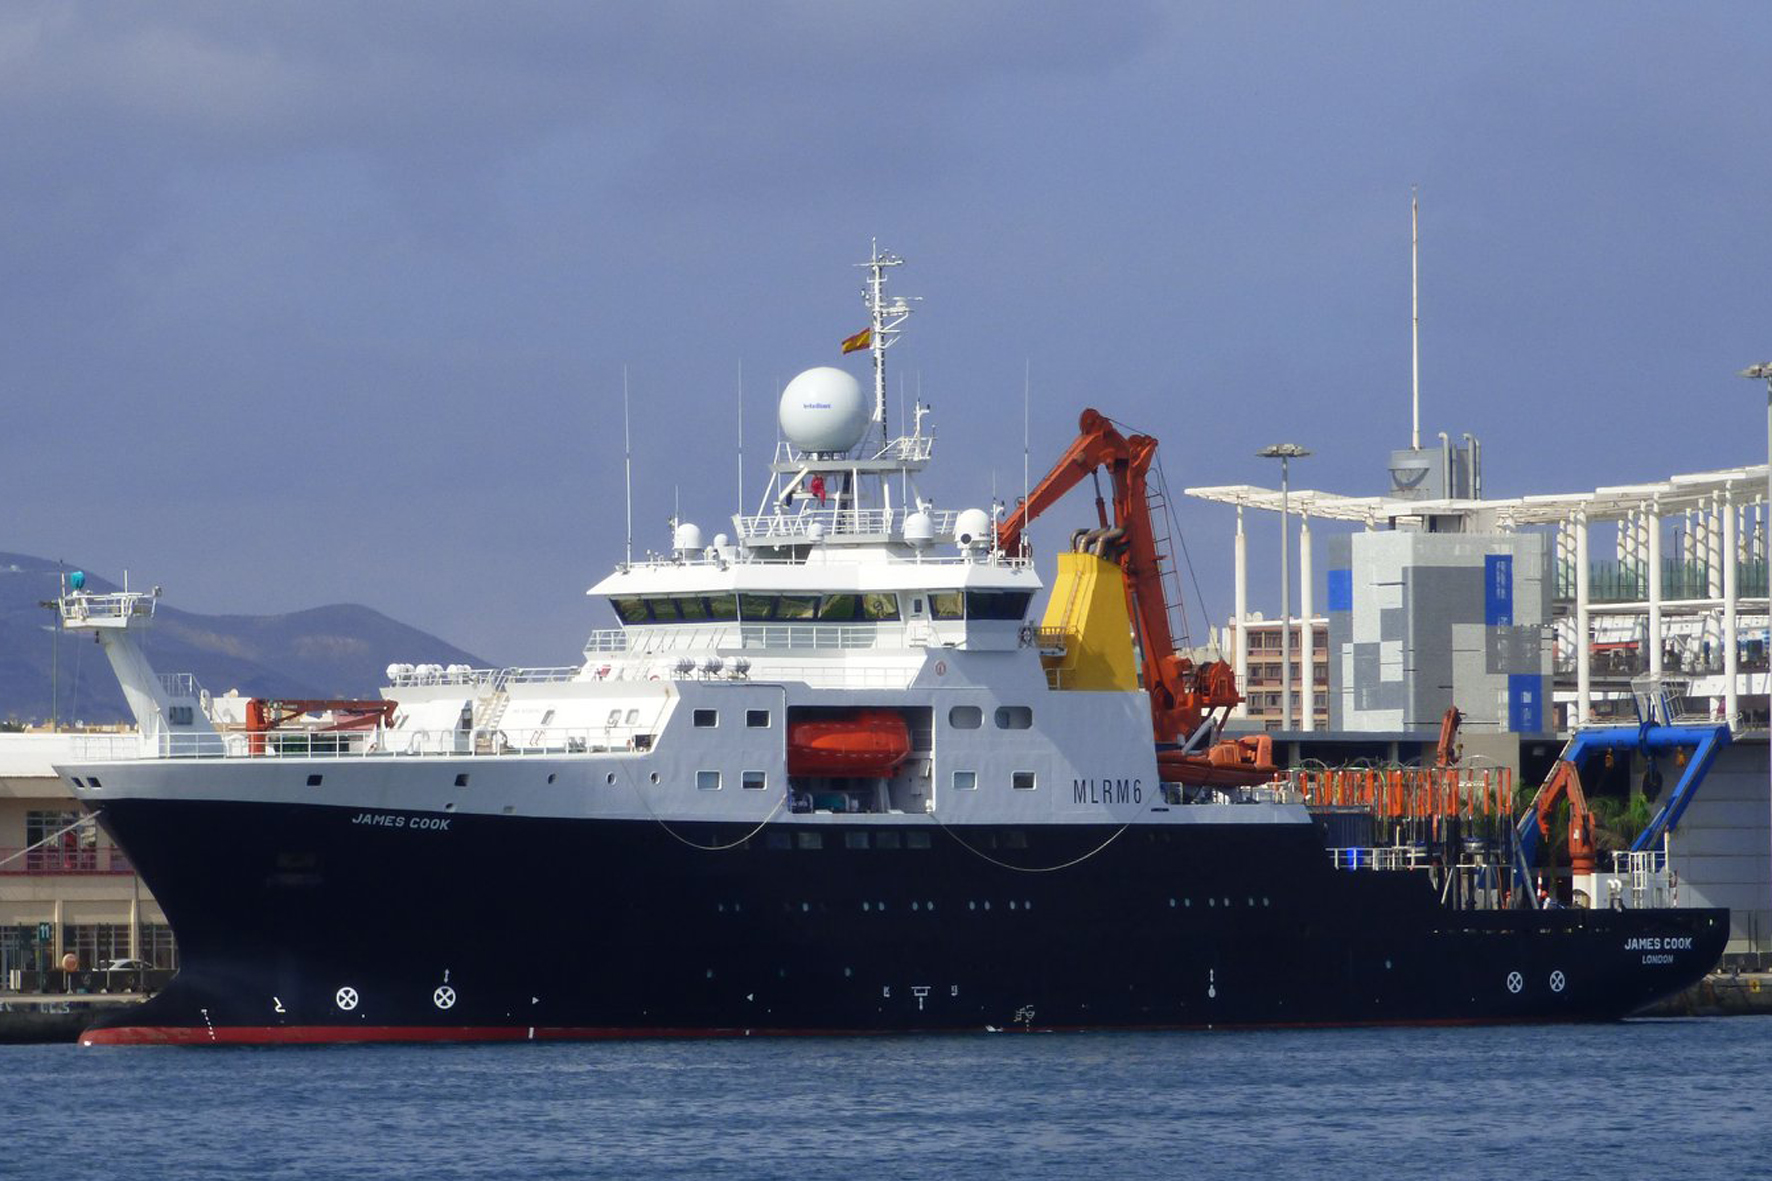 Ecologistas en Acción denuncia la campaña de prospección minera submarina a 250 millas de la isla de El Hierro por el buque británico James Cook